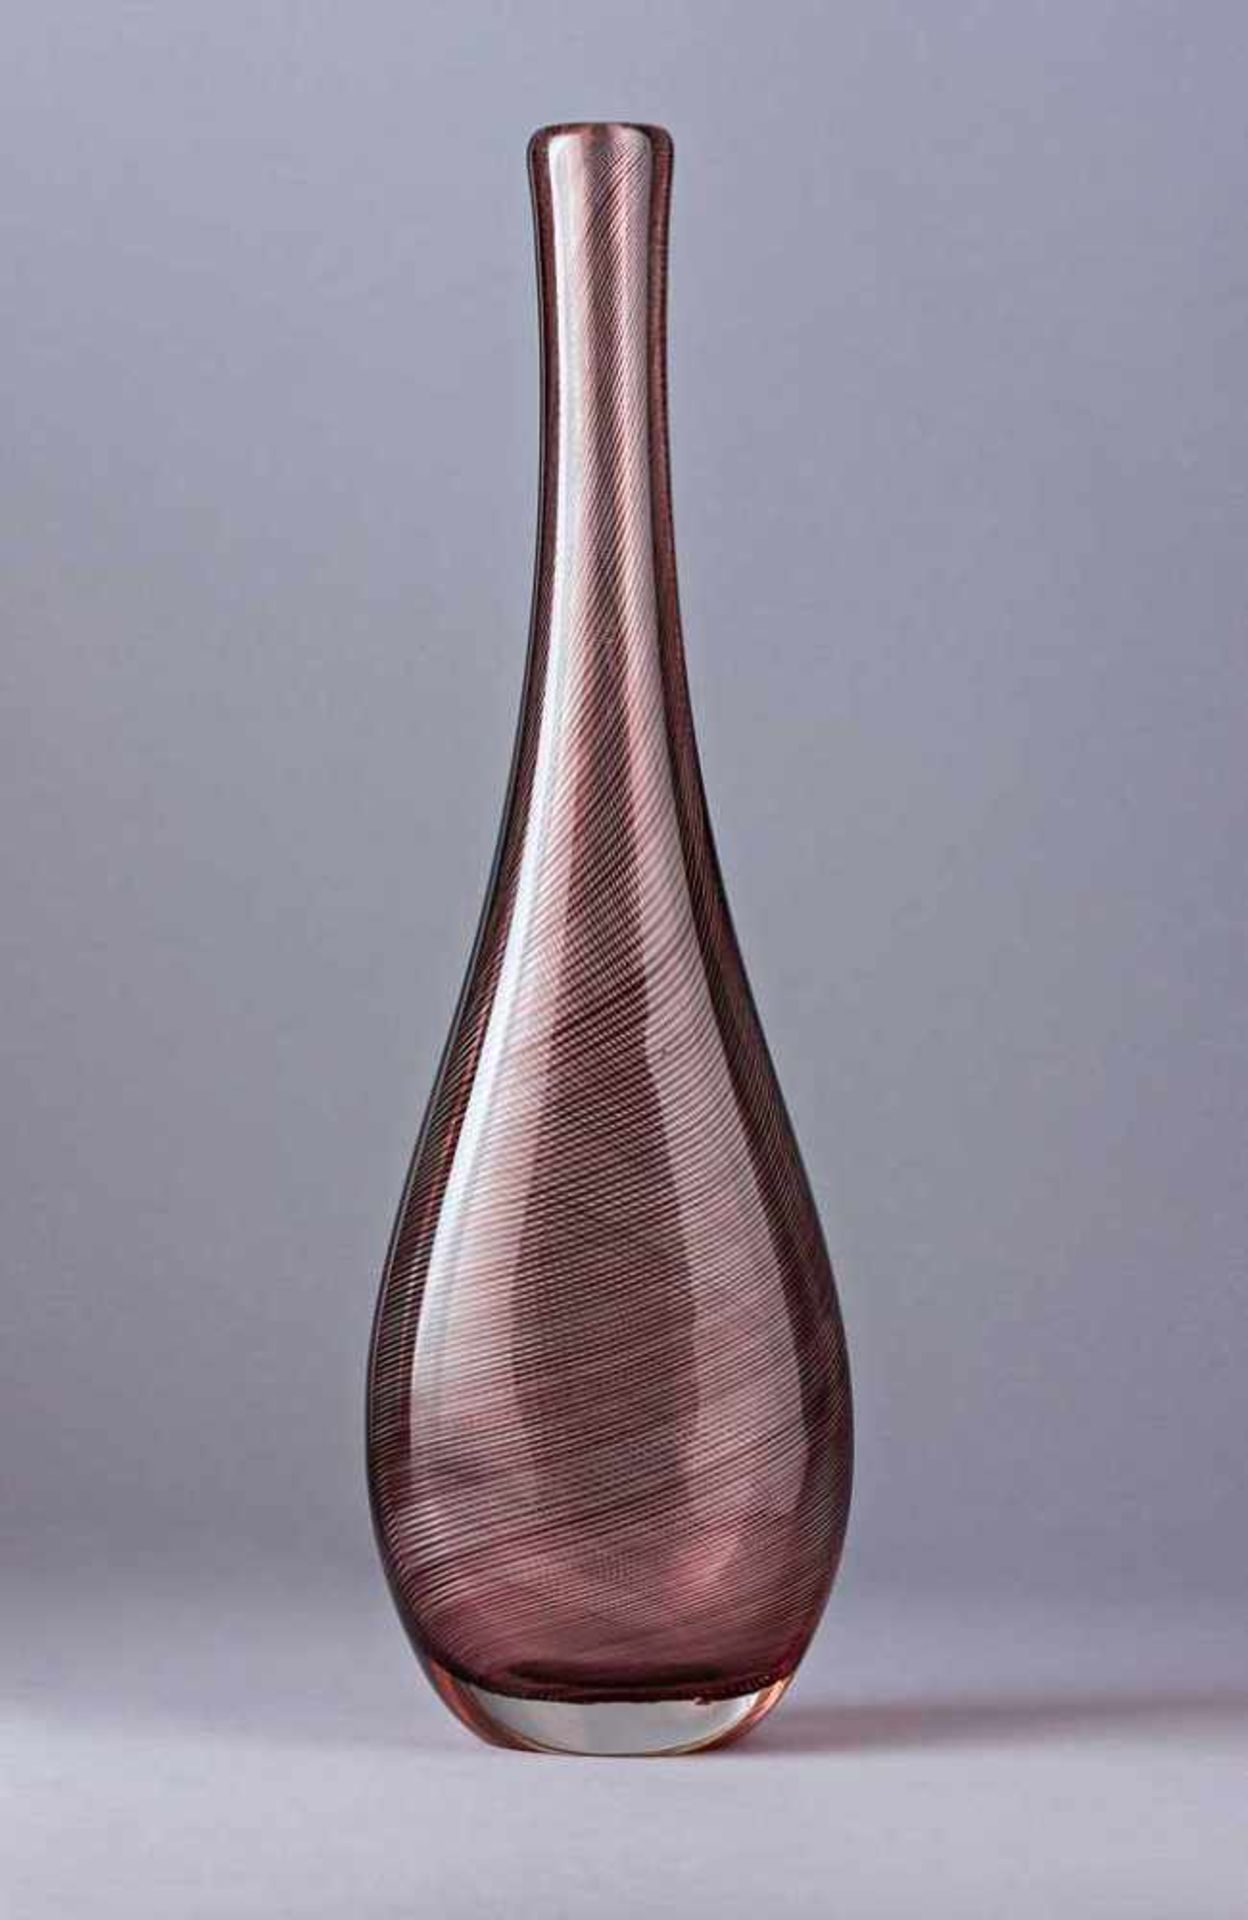 Venini-Vase. Am Boden bez. Keulenform. Farbloses Glas mit roten Spiralfäden. Murano. H 36 cm